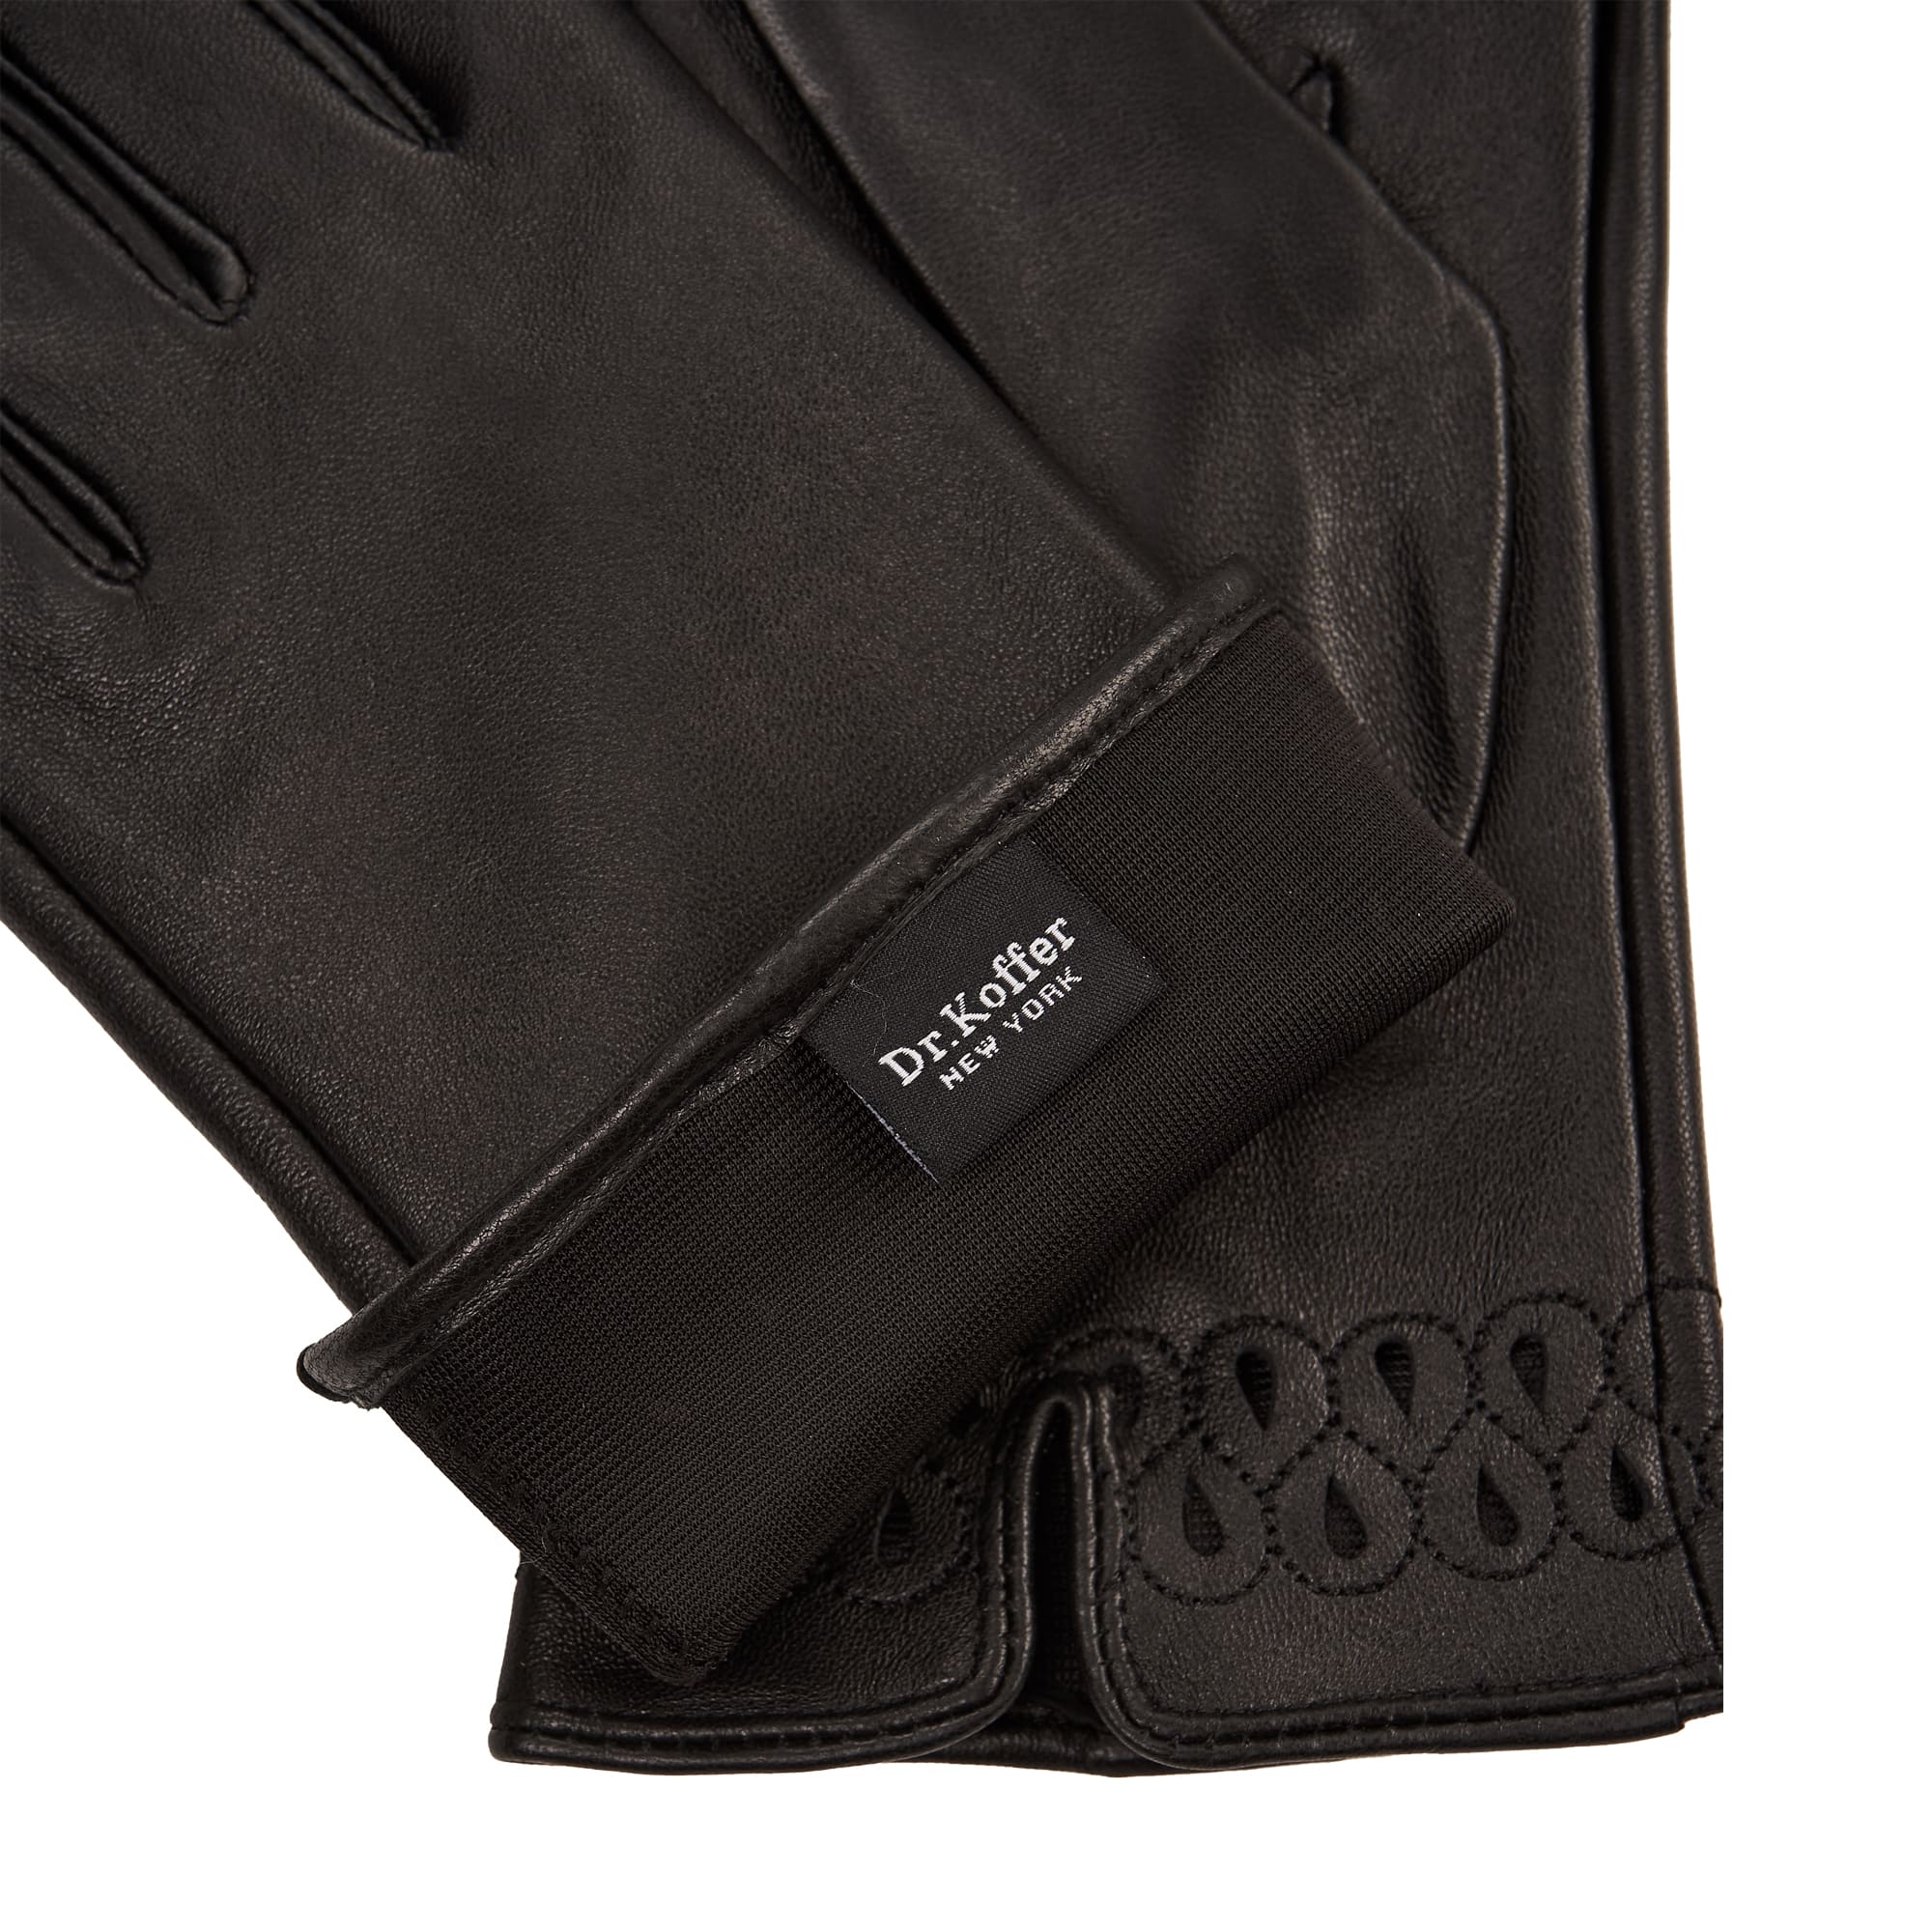 Др.Коффер H660148-236-04 перчатки женские touch (6,5), размер 6, цвет черный - фото 3